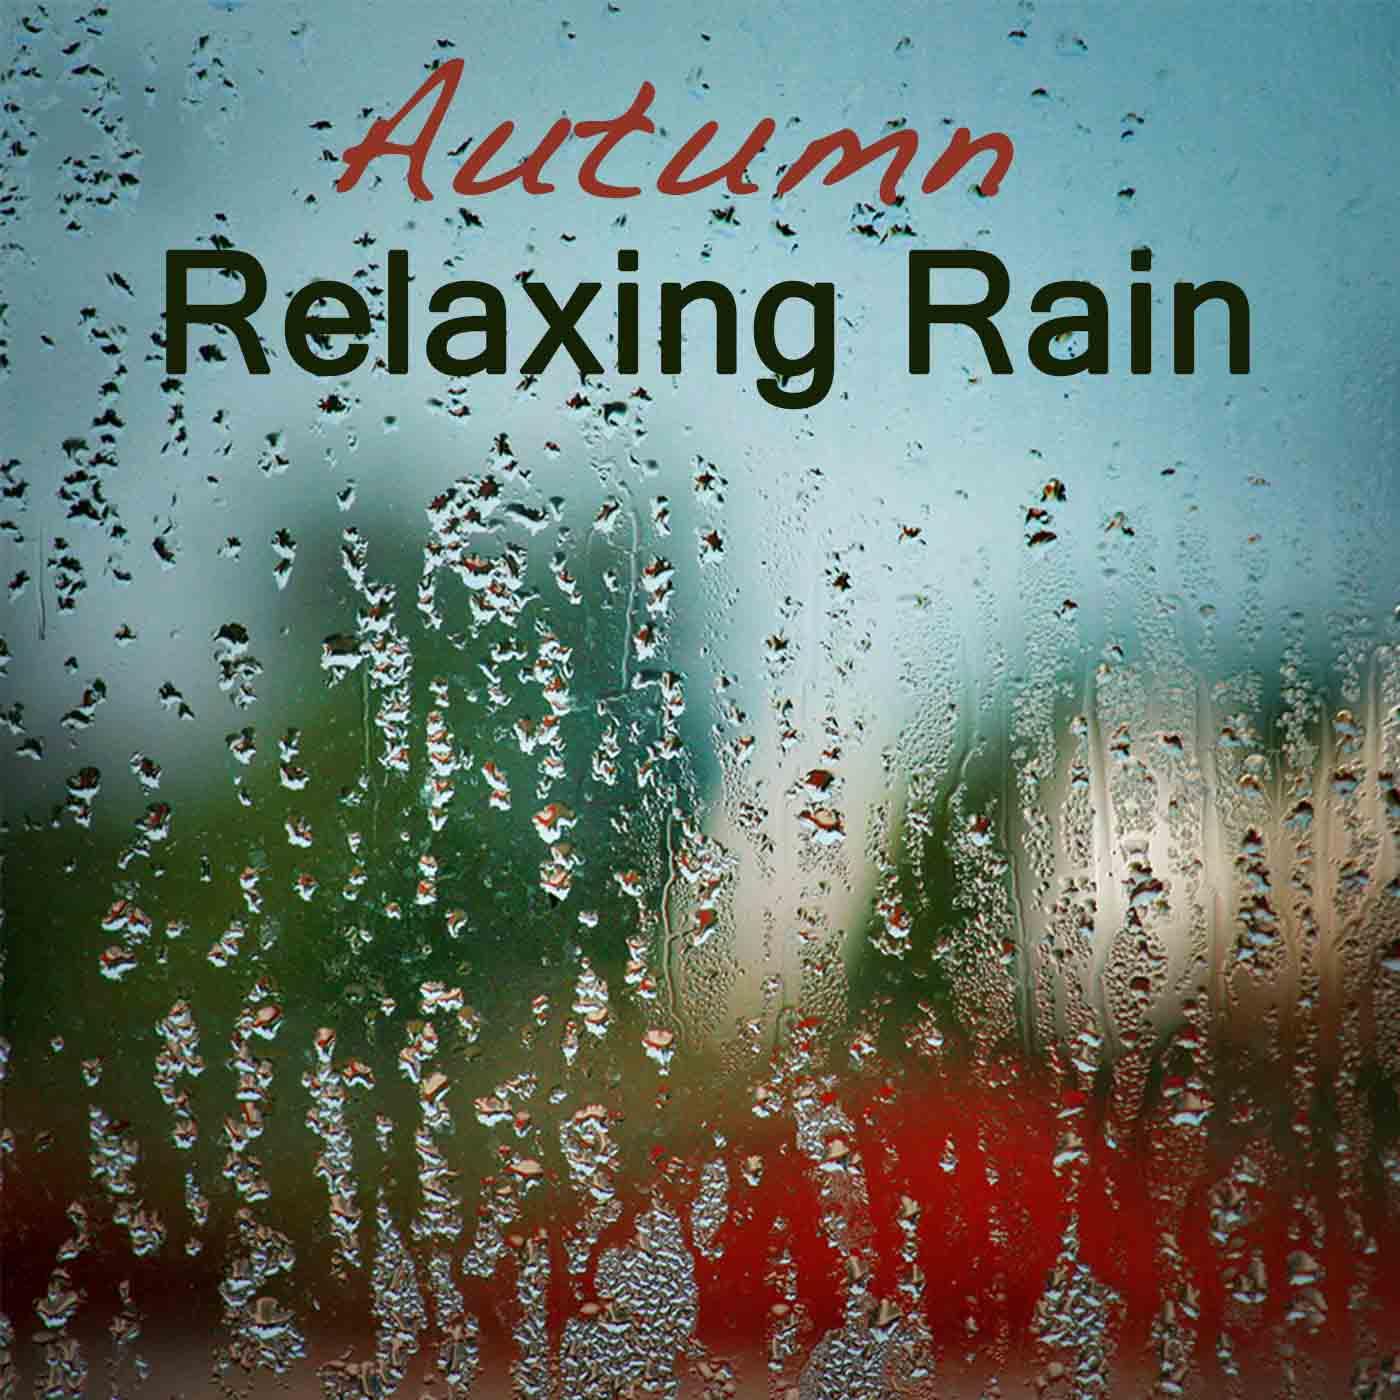 Rain Relaxing Sounds